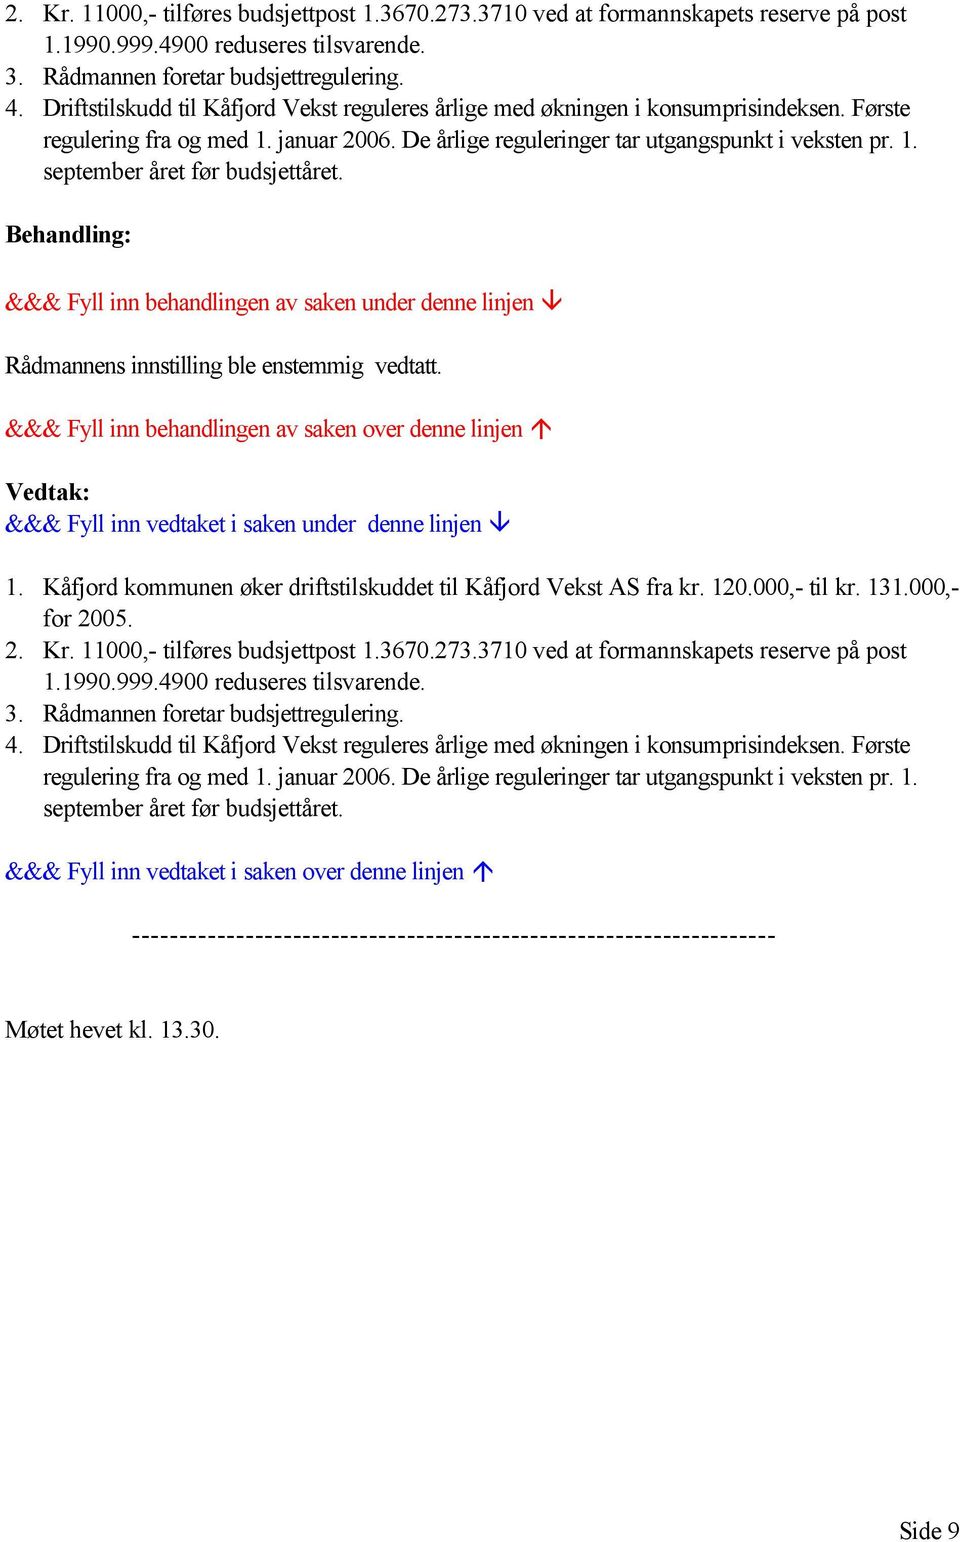 Rådmannens innstilling ble enstemmig vedtatt. 1. Kåfjord kommunen øker driftstilskuddet til Kåfjord Vekst AS fra kr. 120.000,- til kr. 131.000,- for 2005.